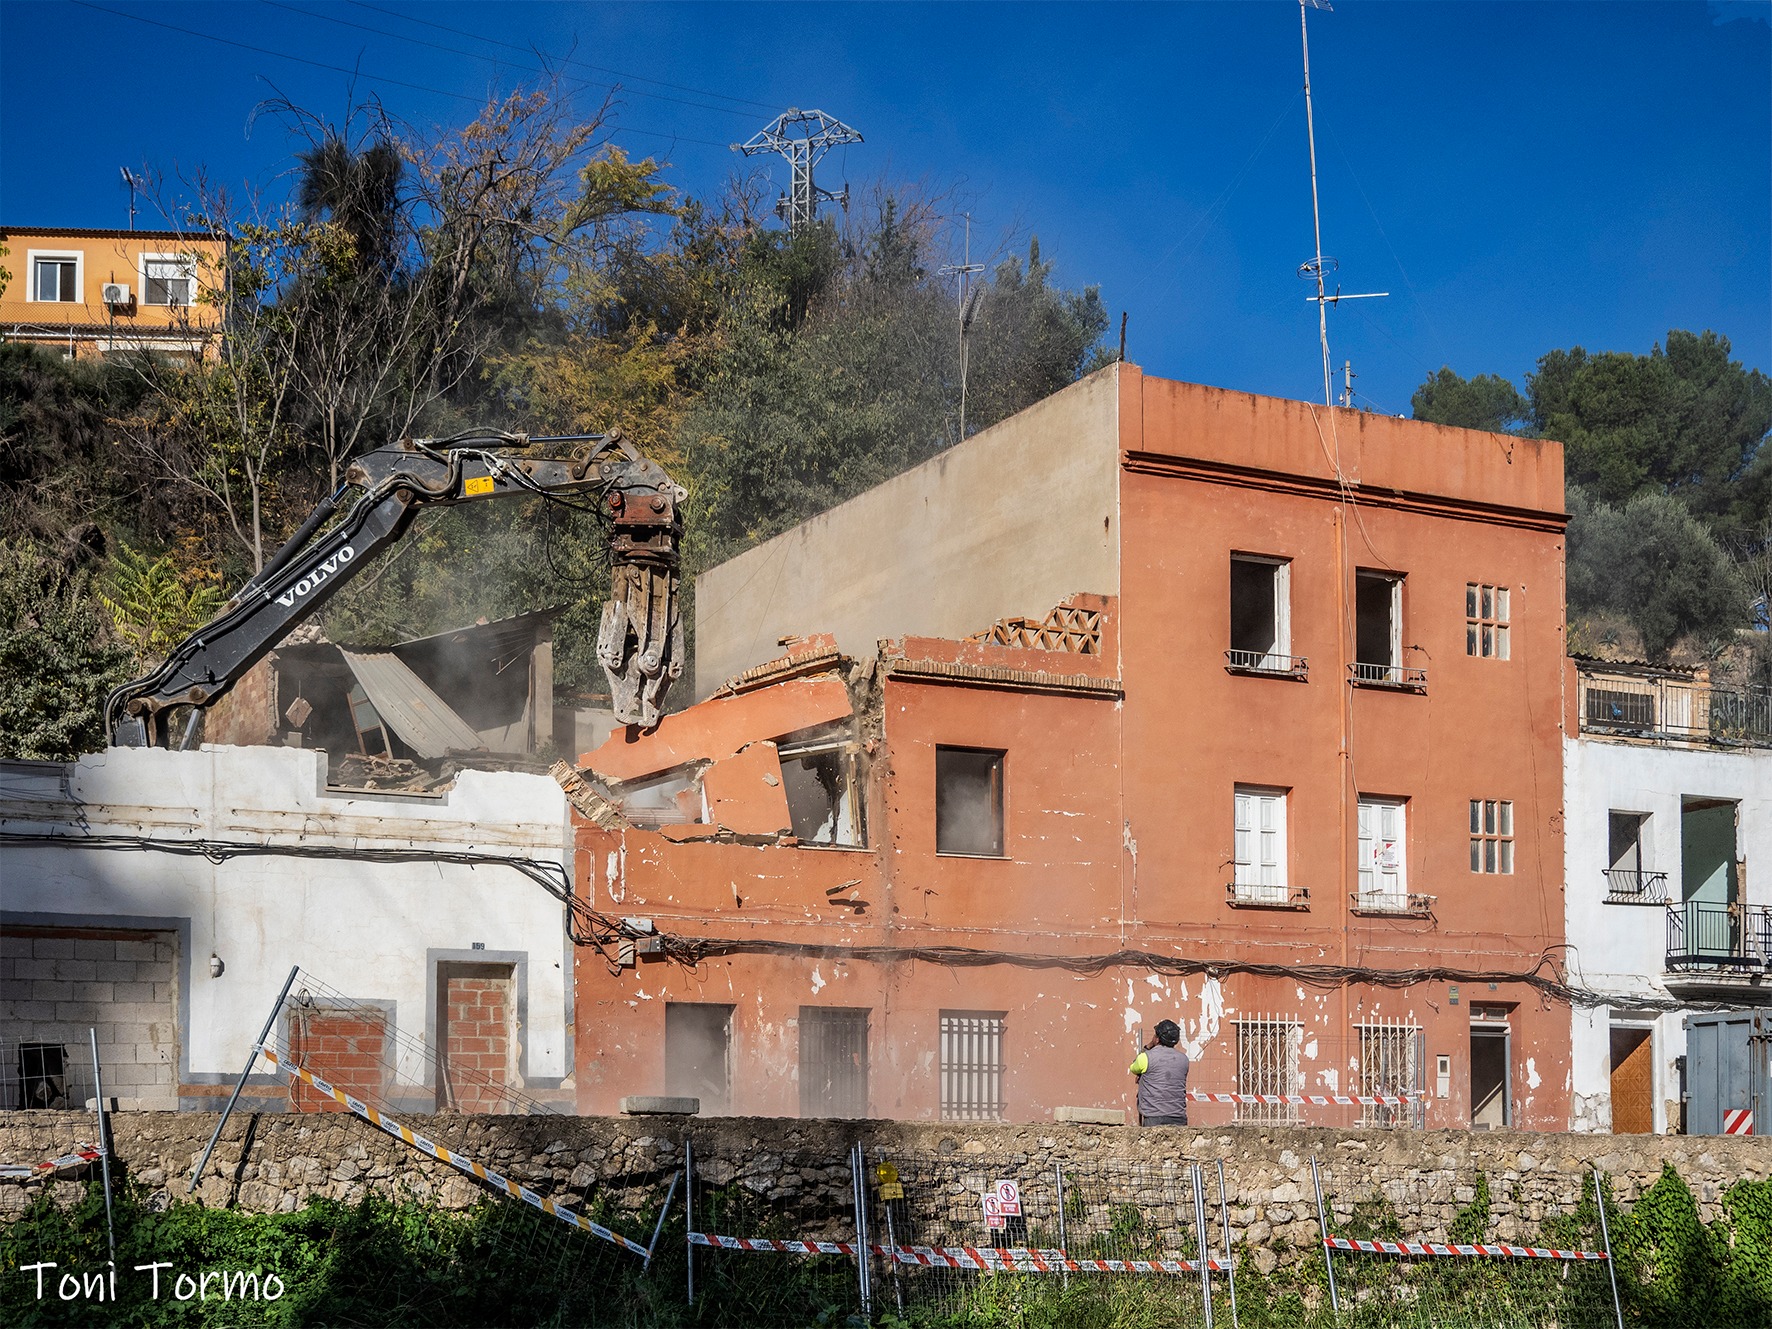 IMATGE HISTÒRICA: Comença la demolició de la Cantereria El Periòdic d'Ontinyent - Noticies a Ontinyent